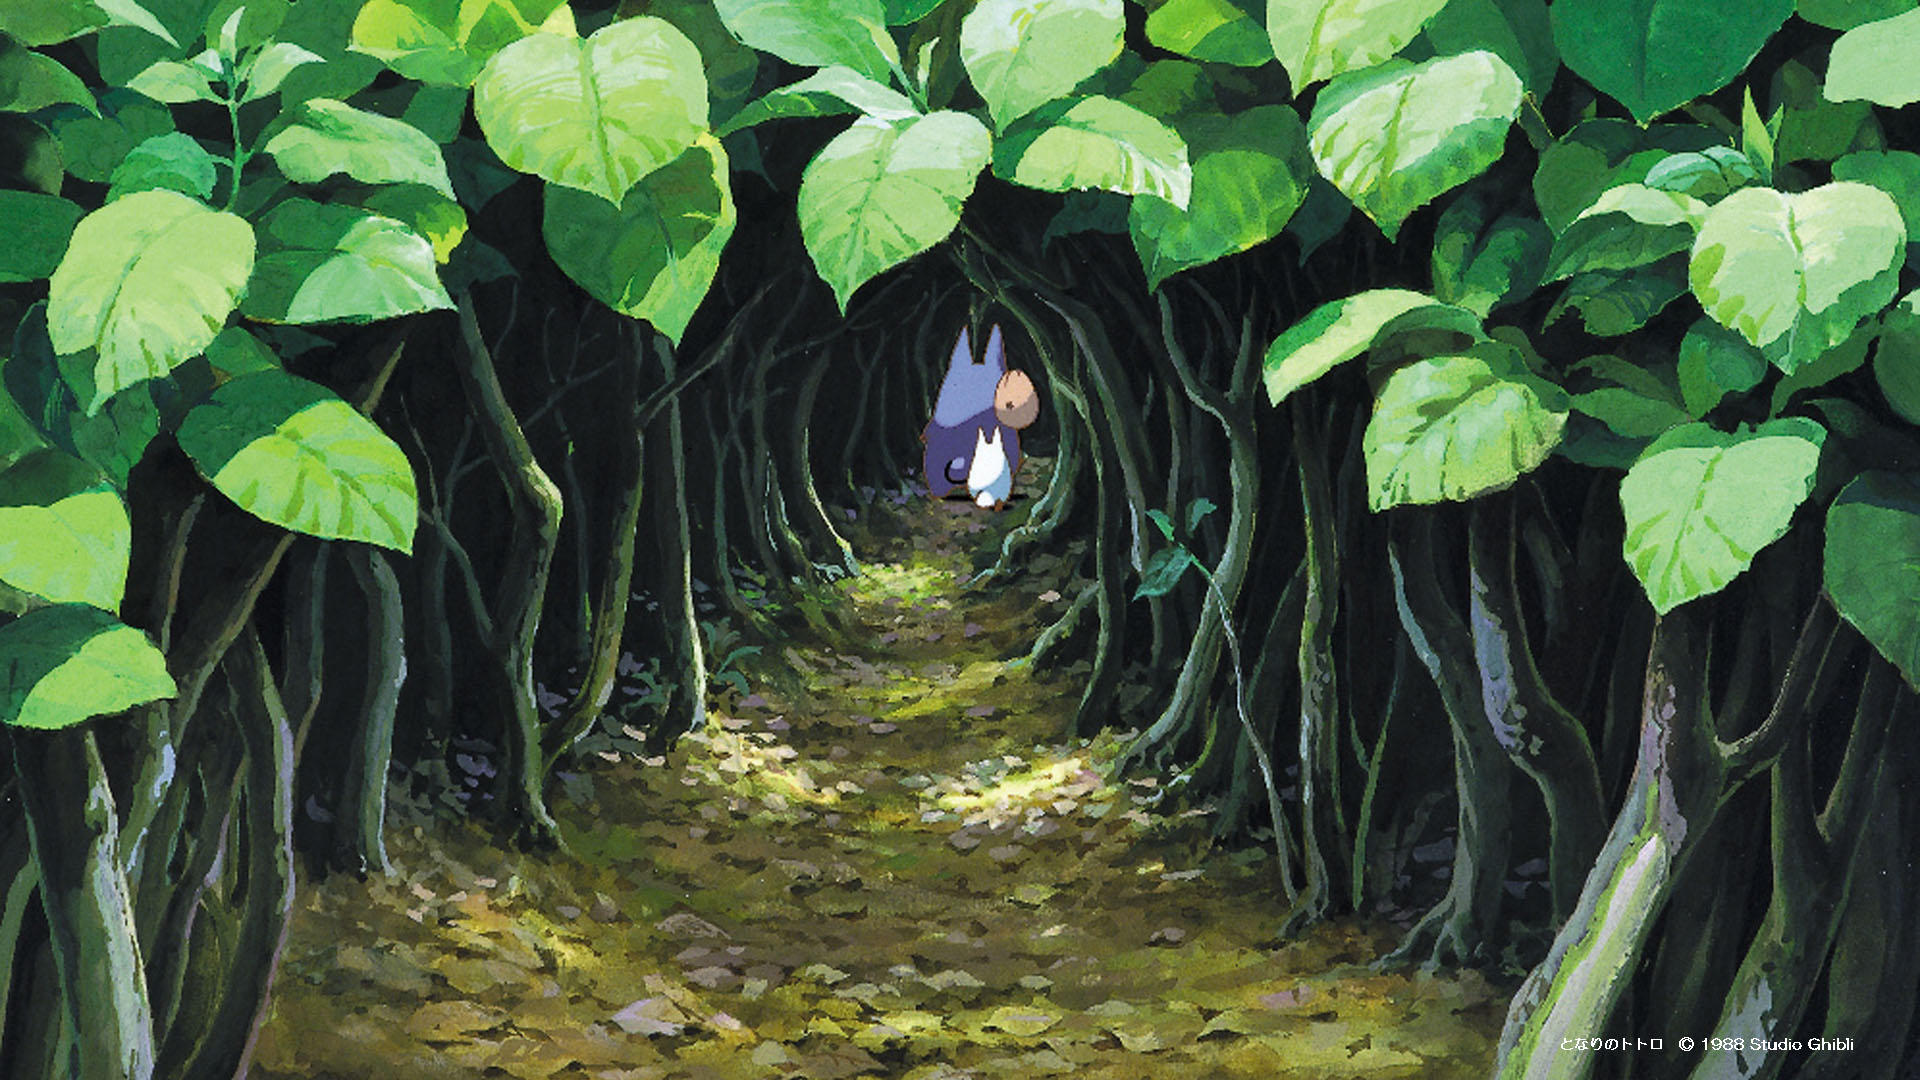 10 Most Popular Studio Ghibli Wallpaper Hd Full Hd  Ghibli Wallpaper Hd   1920x1080 Wallpaper  teahubio  Studio ghibli Studio ghibli background  Ghibli